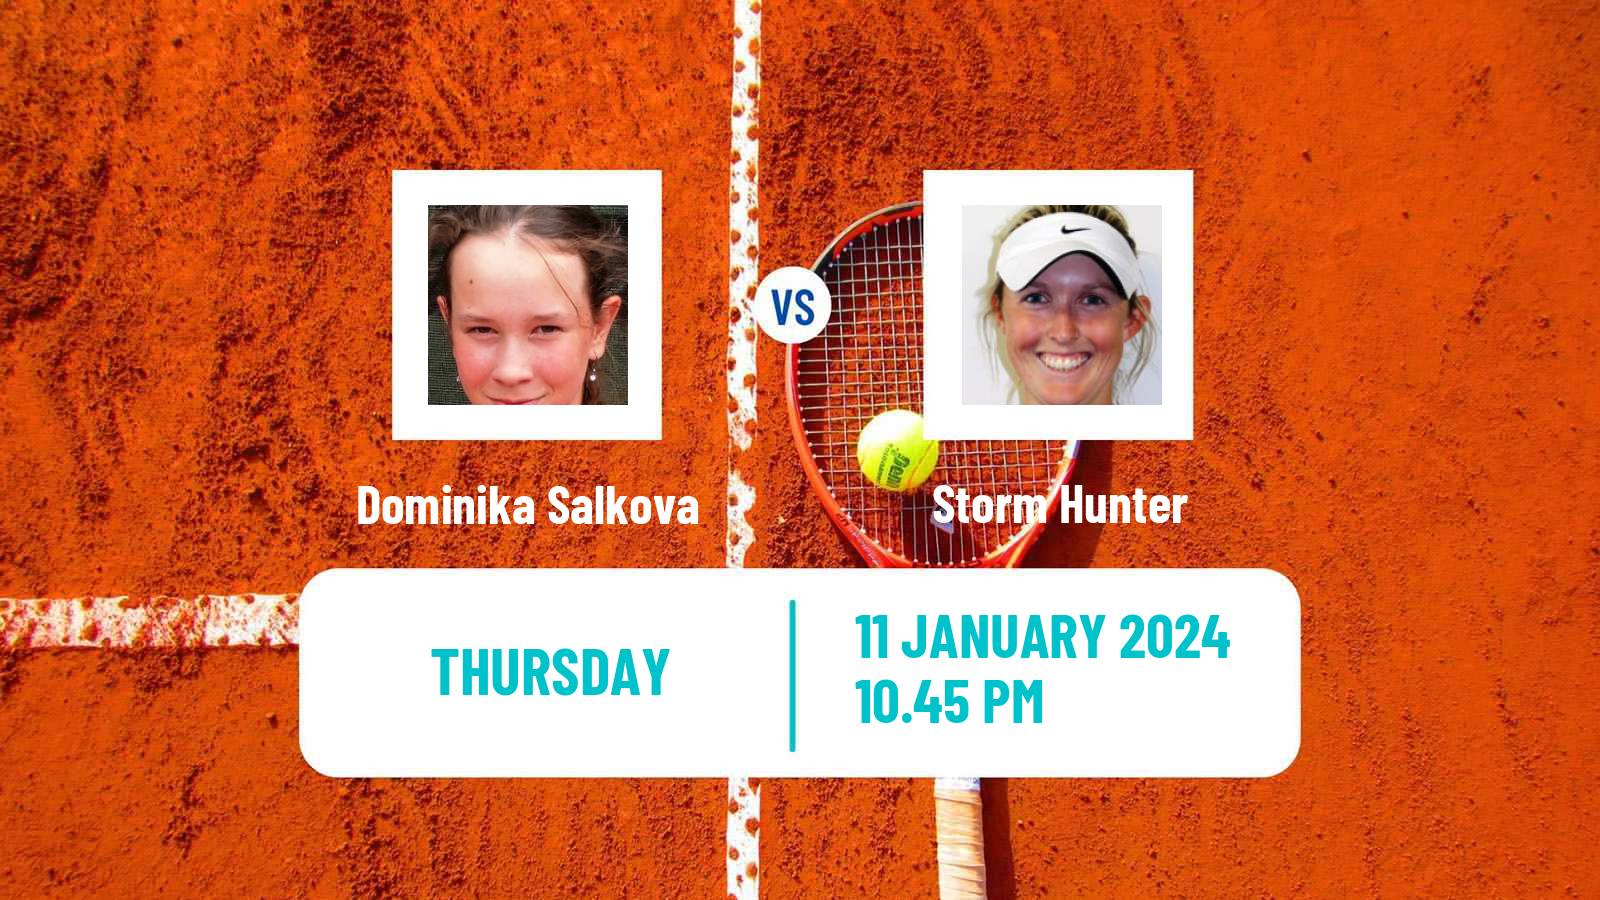 Tennis WTA Australian Open Dominika Salkova - Storm Hunter